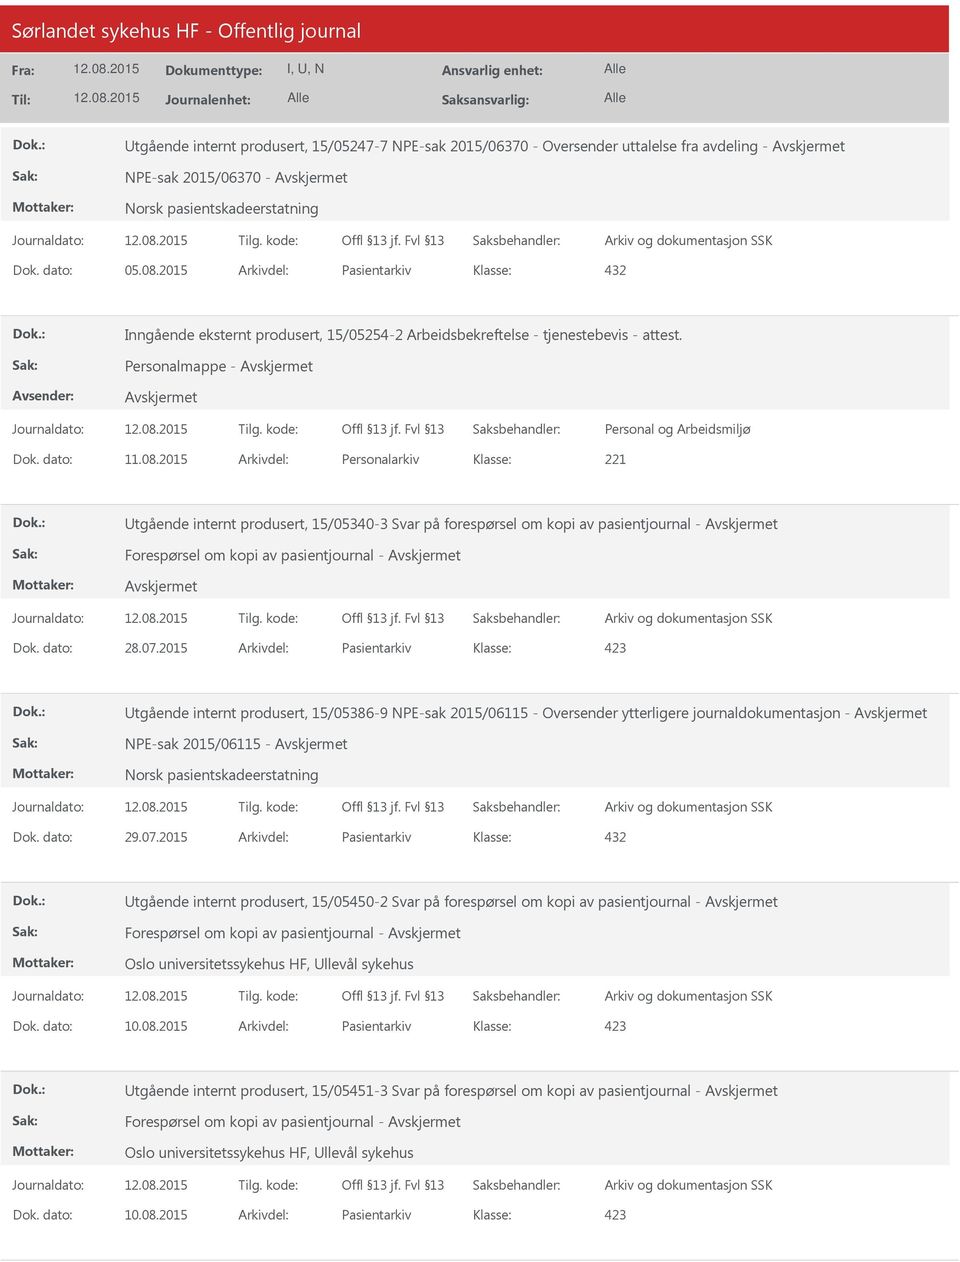 2015 Arkivdel: Personalarkiv Utgående internt produsert, 15/05340-3 Svar på forespørsel om kopi av pasientjournal - Forespørsel om kopi av pasientjournal - Dok. dato: 28.07.